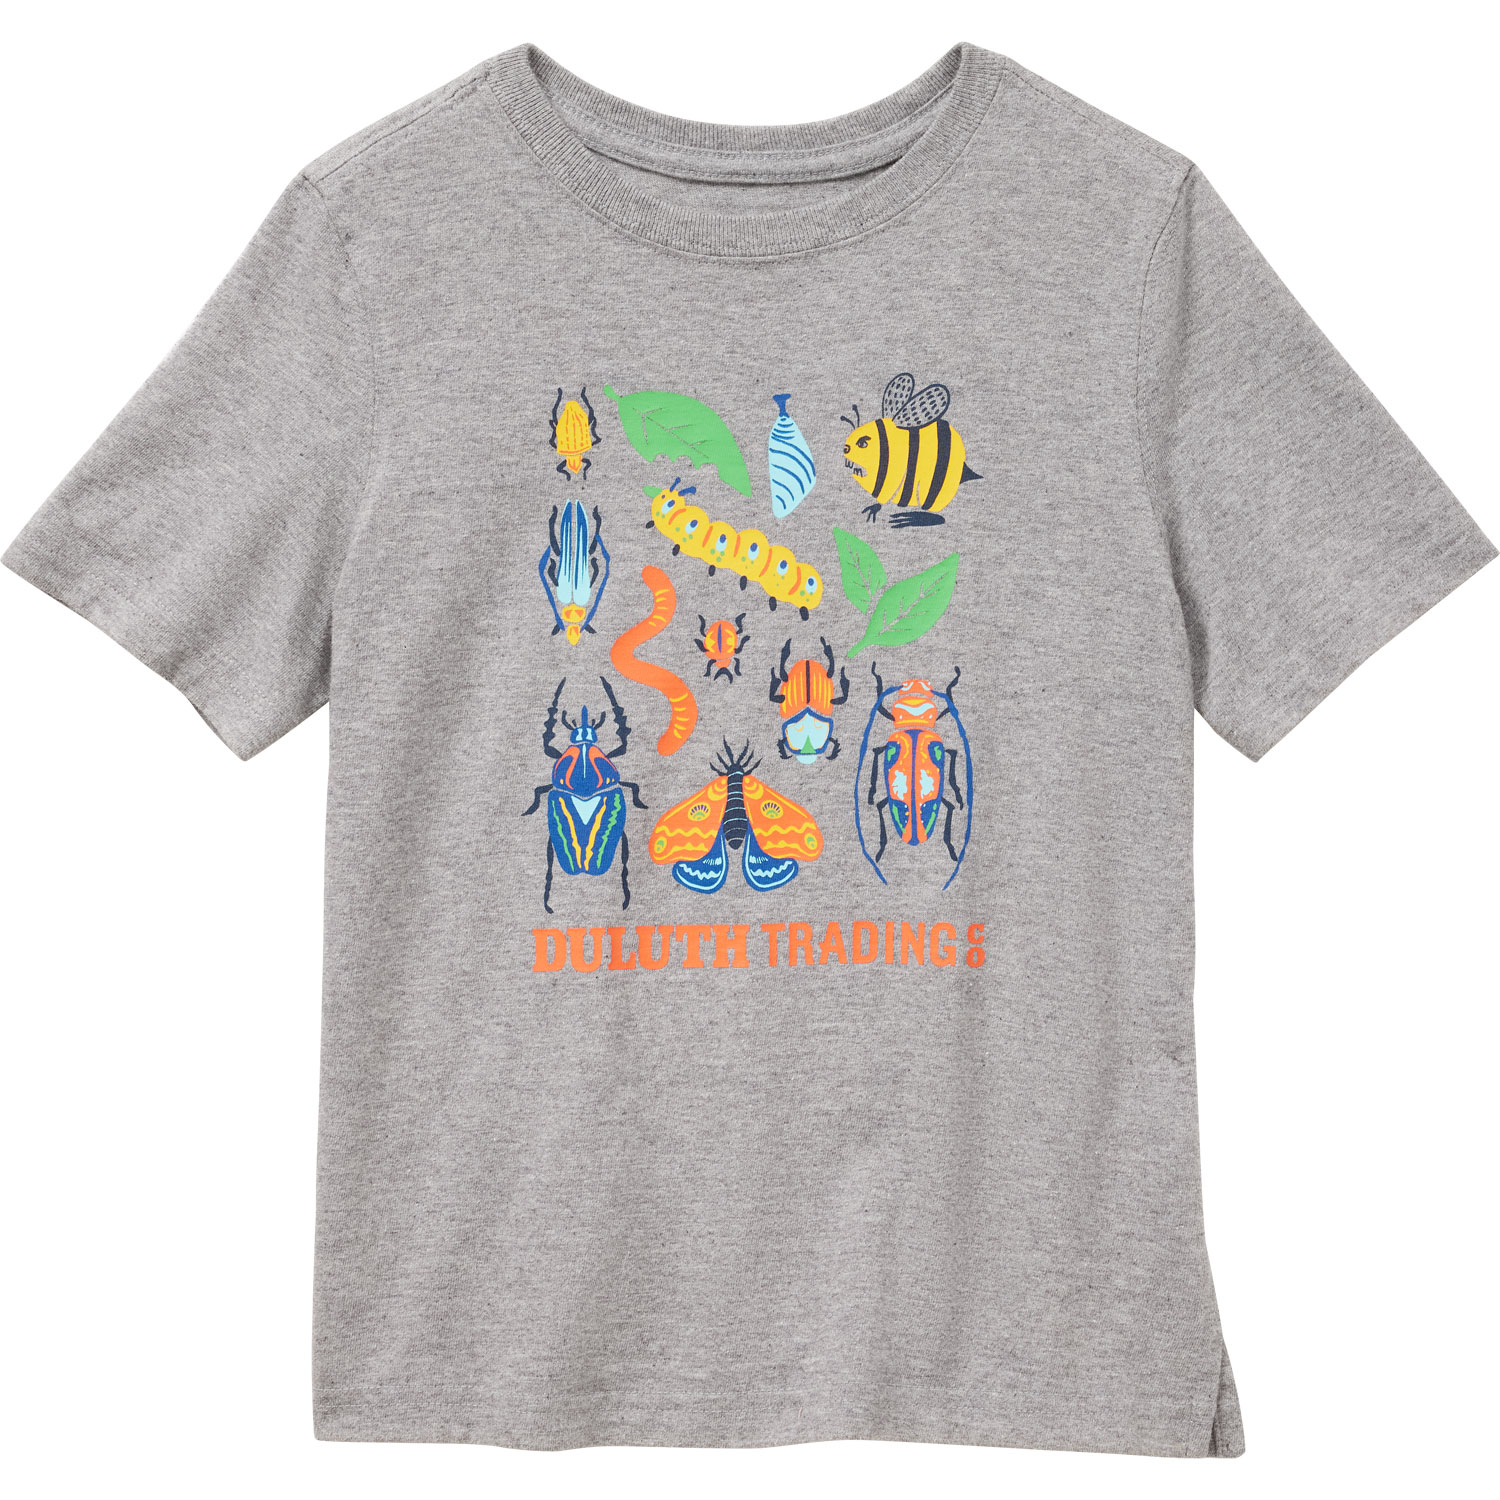 Kids Fishing T-shirt Printing T Shirt Children's Clothing Boys